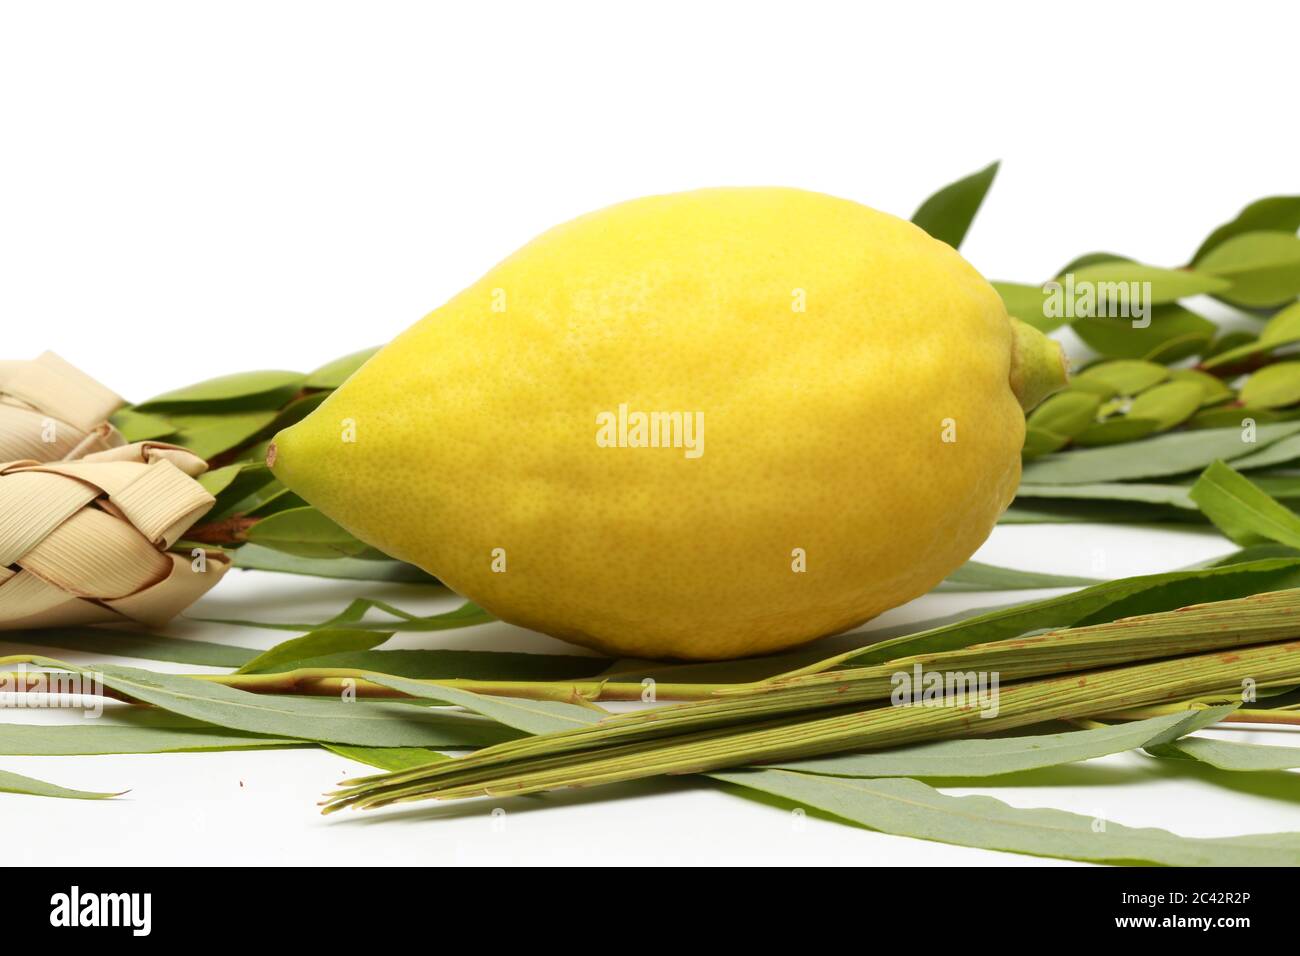 Etrog (Zitronen-Frucht), hadass (Myrtenzweige), Lulav (Dattelpalmenzweig) und Arava (Weide) wurden bei der Zeremonie des jüdischen Feiertages von Sukkoth verwendet. Stockfoto